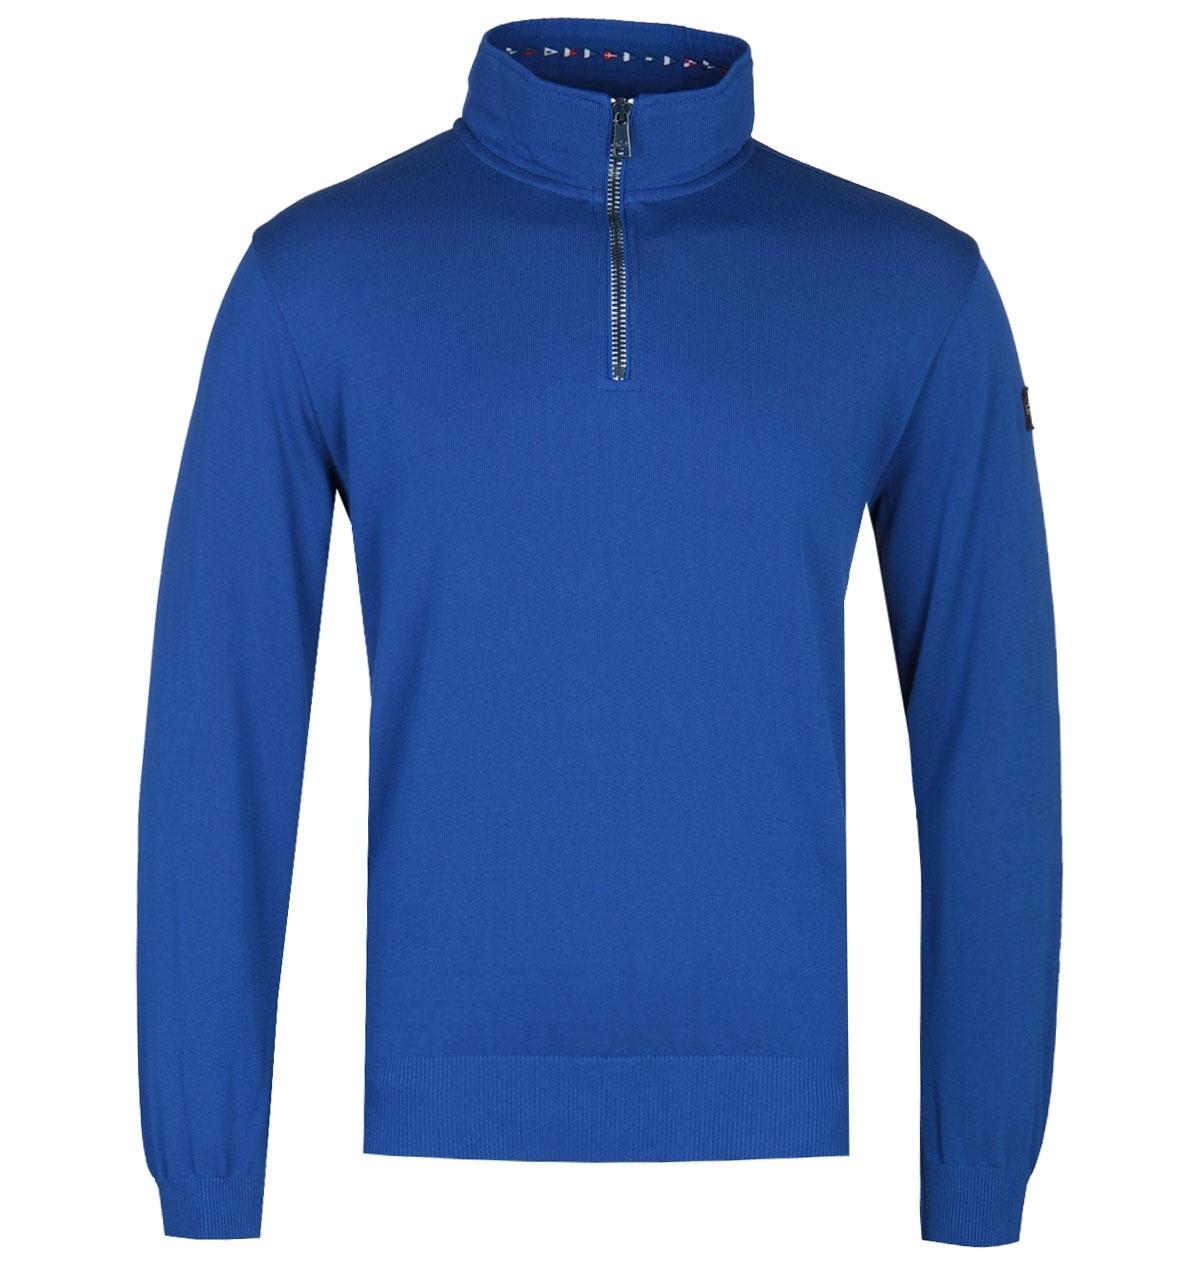 Paul & Shark Cotton Cobalt Blue Zip Neck Sweater for Men - Lyst